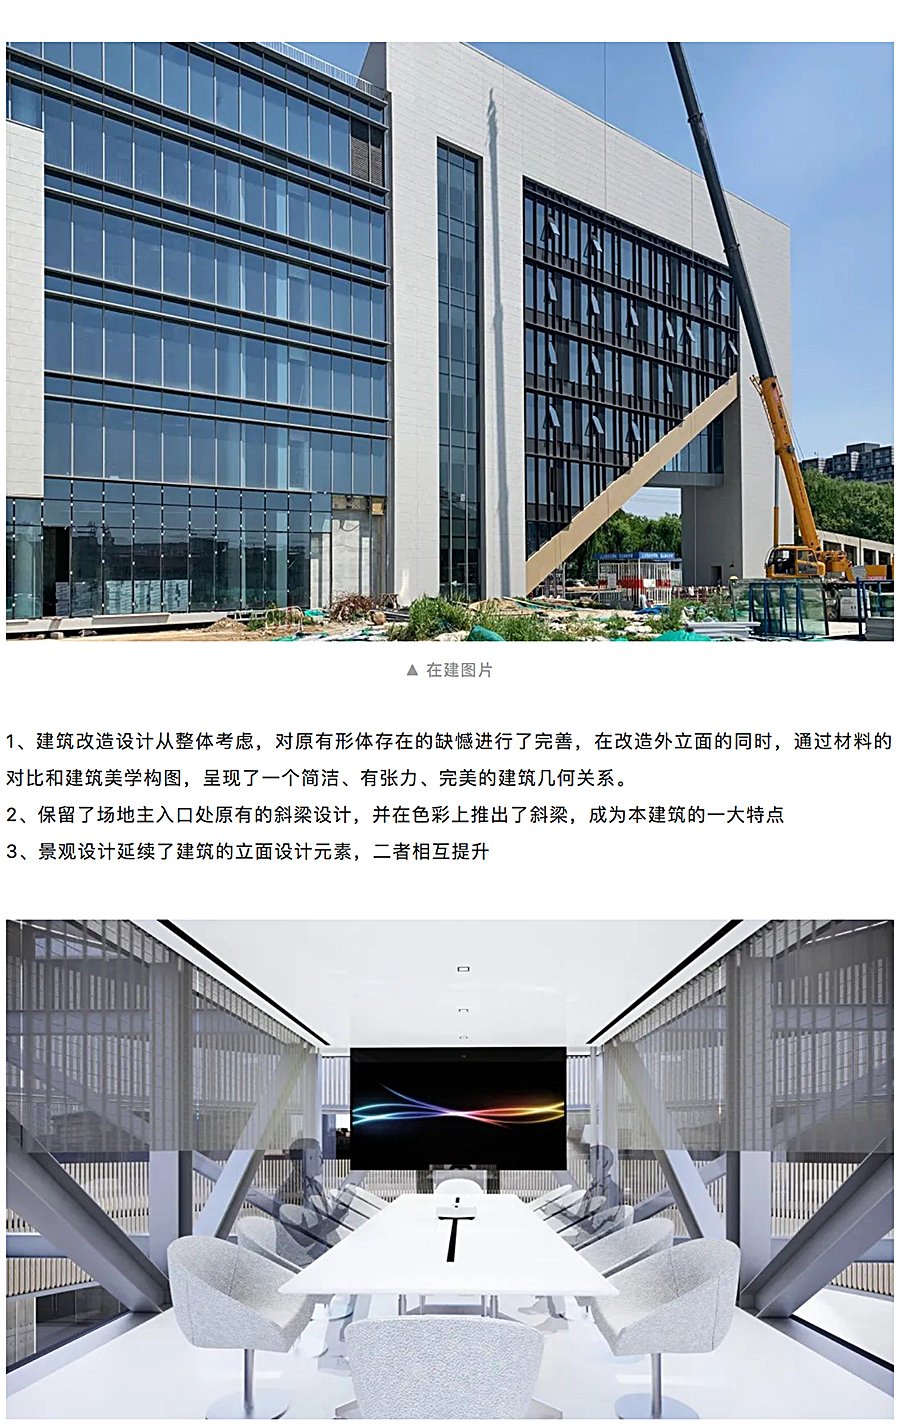 北京四环空港办公楼改造设计_0004_图层-5.jpg